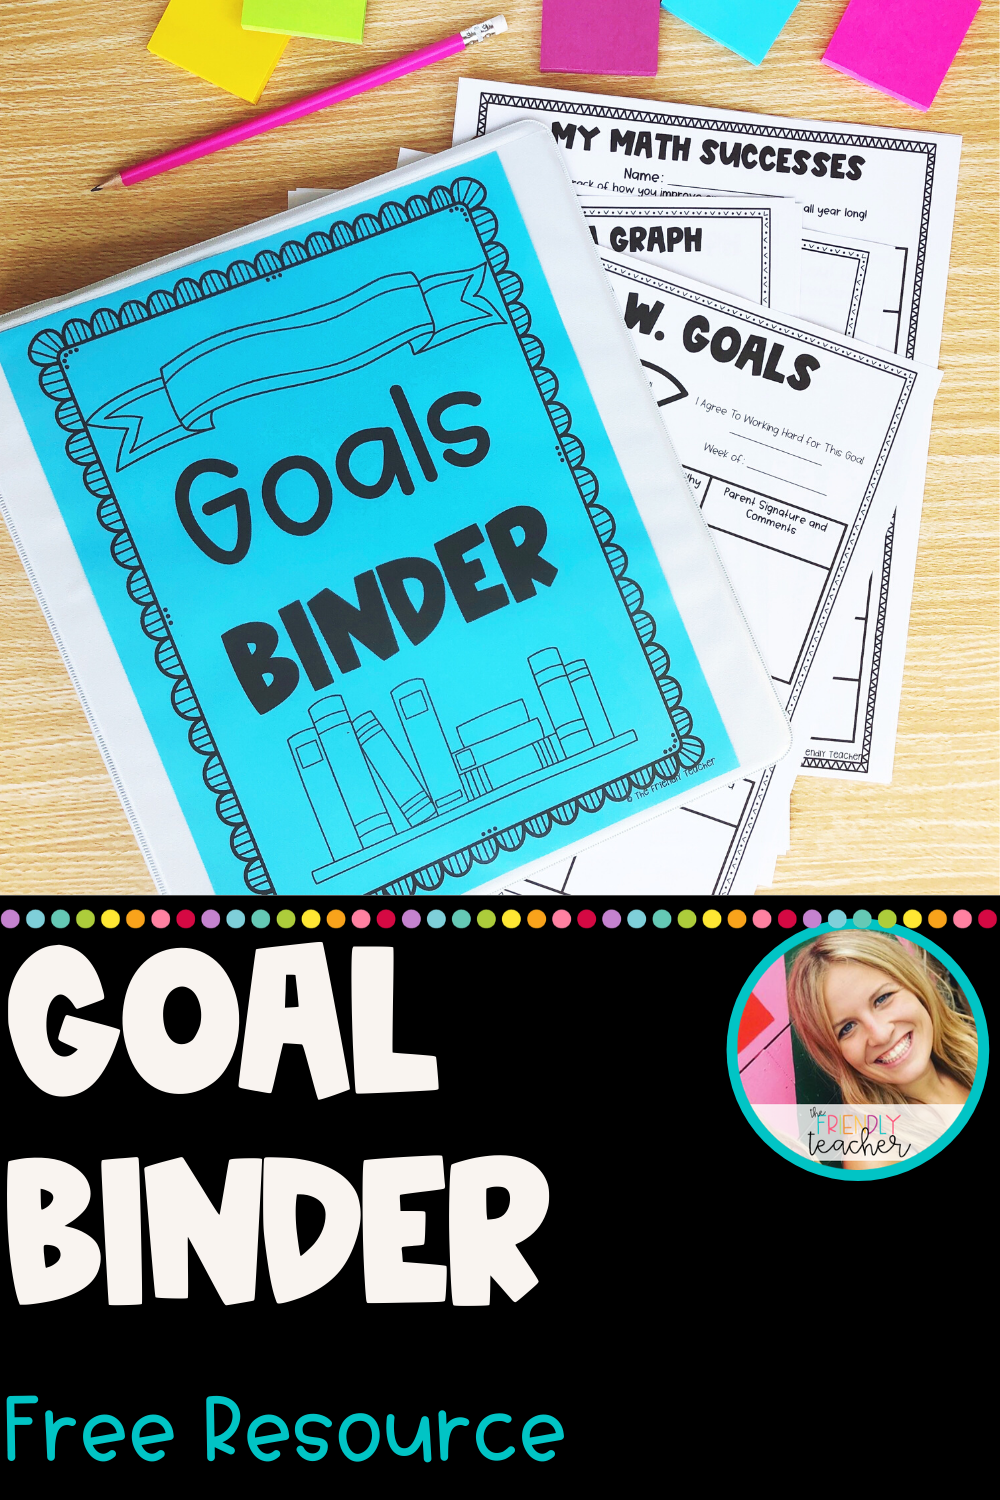 Goal Binder Free Resource